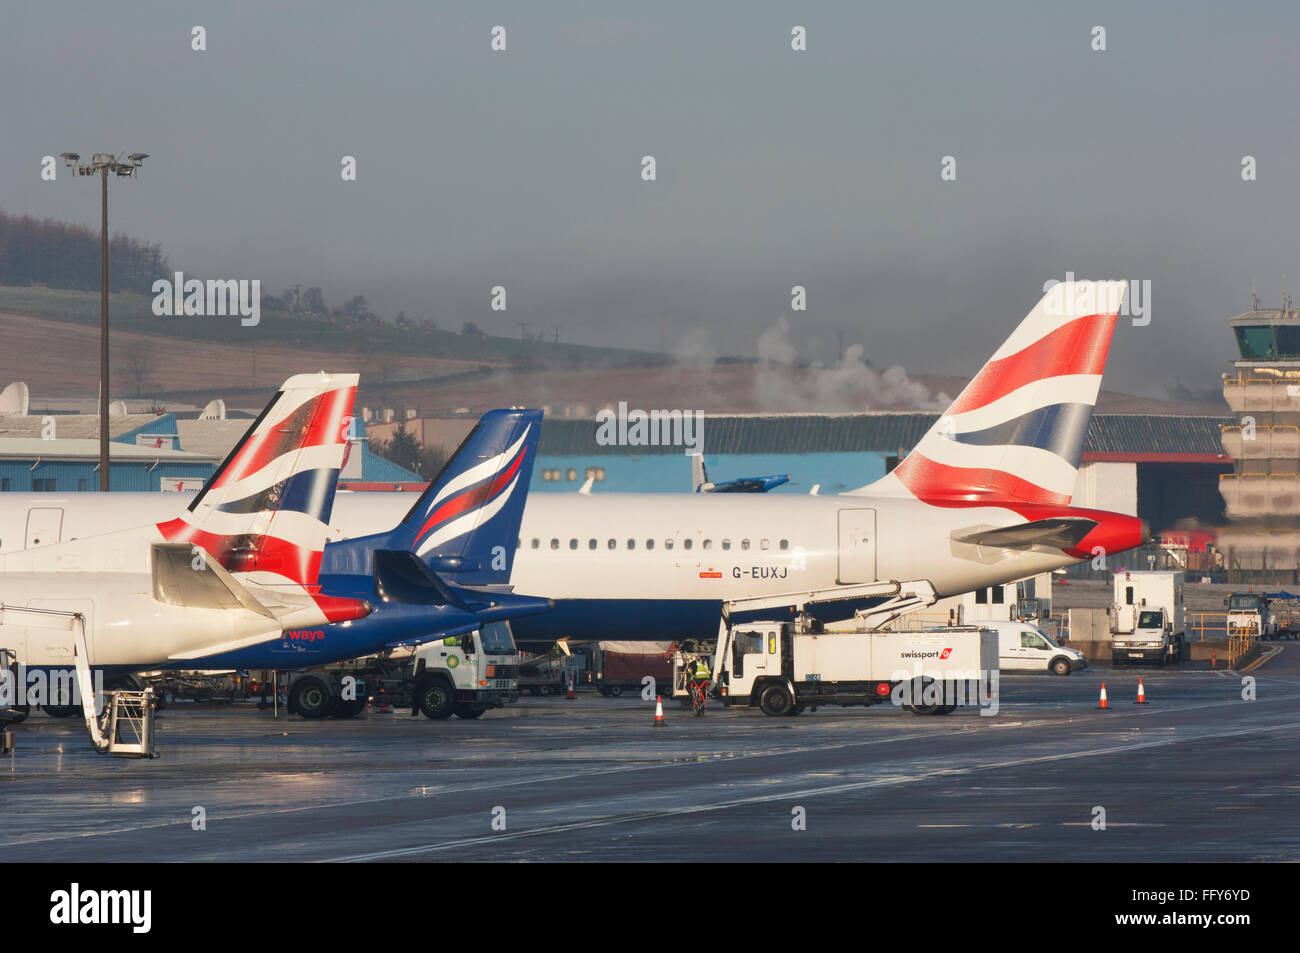 Tails d'avions alignés sur le tarmac à l'aéroport d'Aberdeen - Ecosse, Royaume-Uni. Banque D'Images